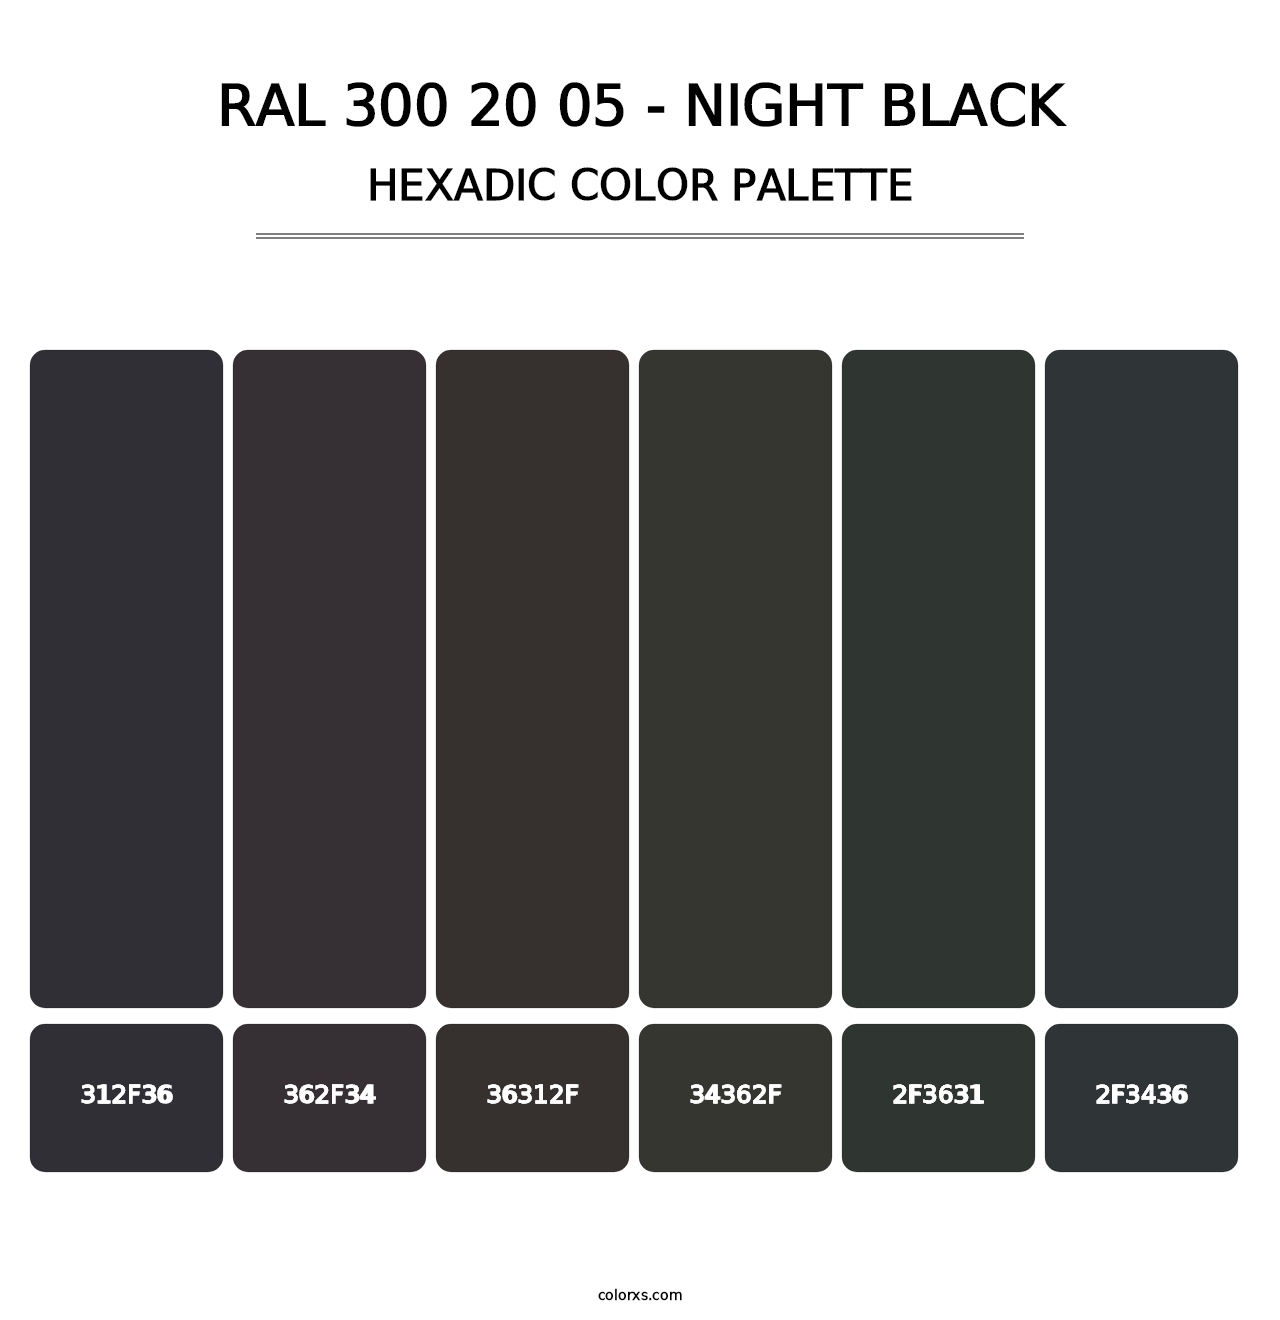 RAL 300 20 05 - Night Black - Hexadic Color Palette